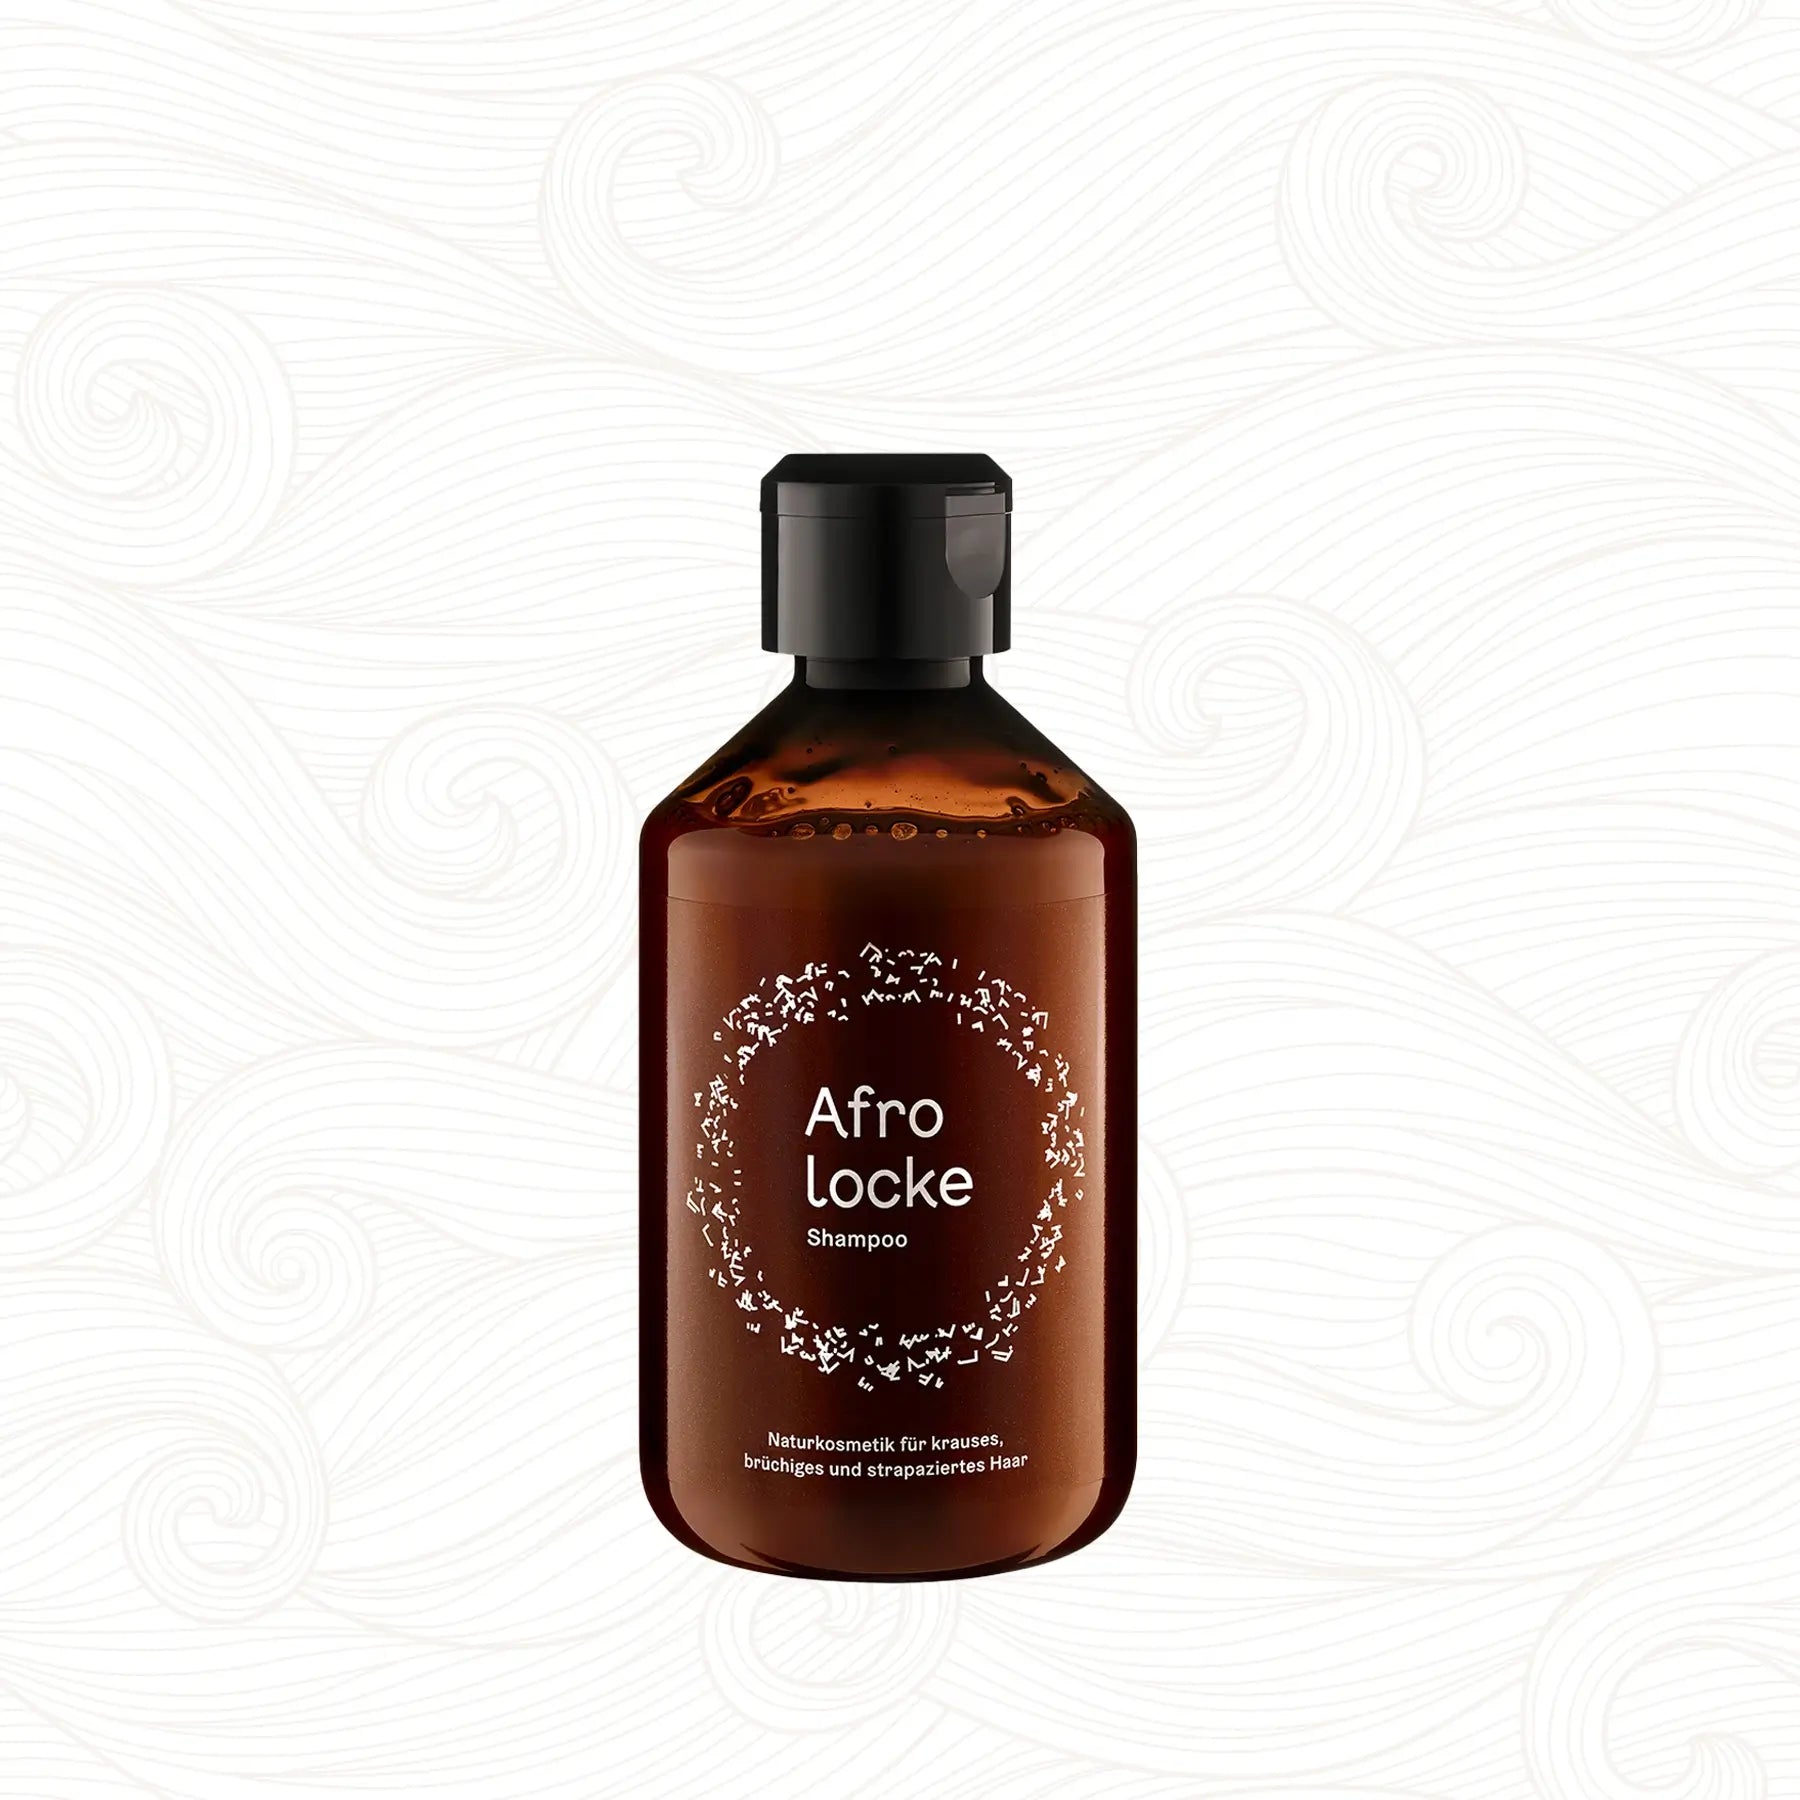 Afrolocke | Shampoo /250ml Shampoo Afrolocke